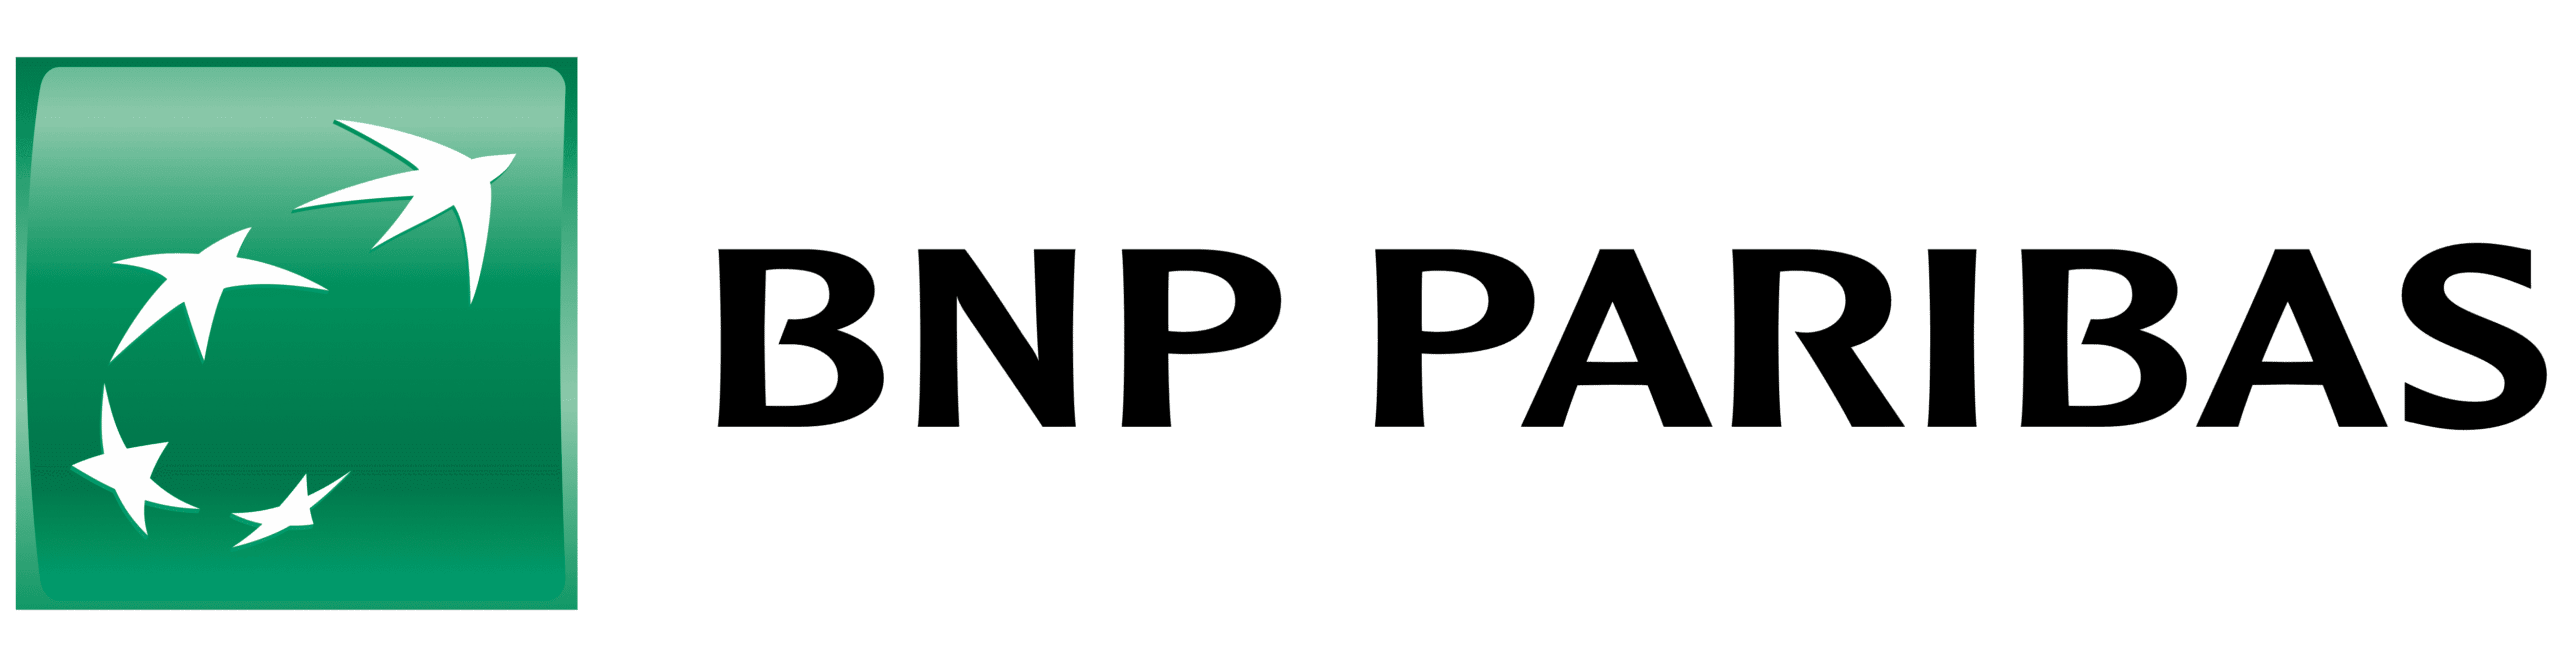 bnp paribas logo banque